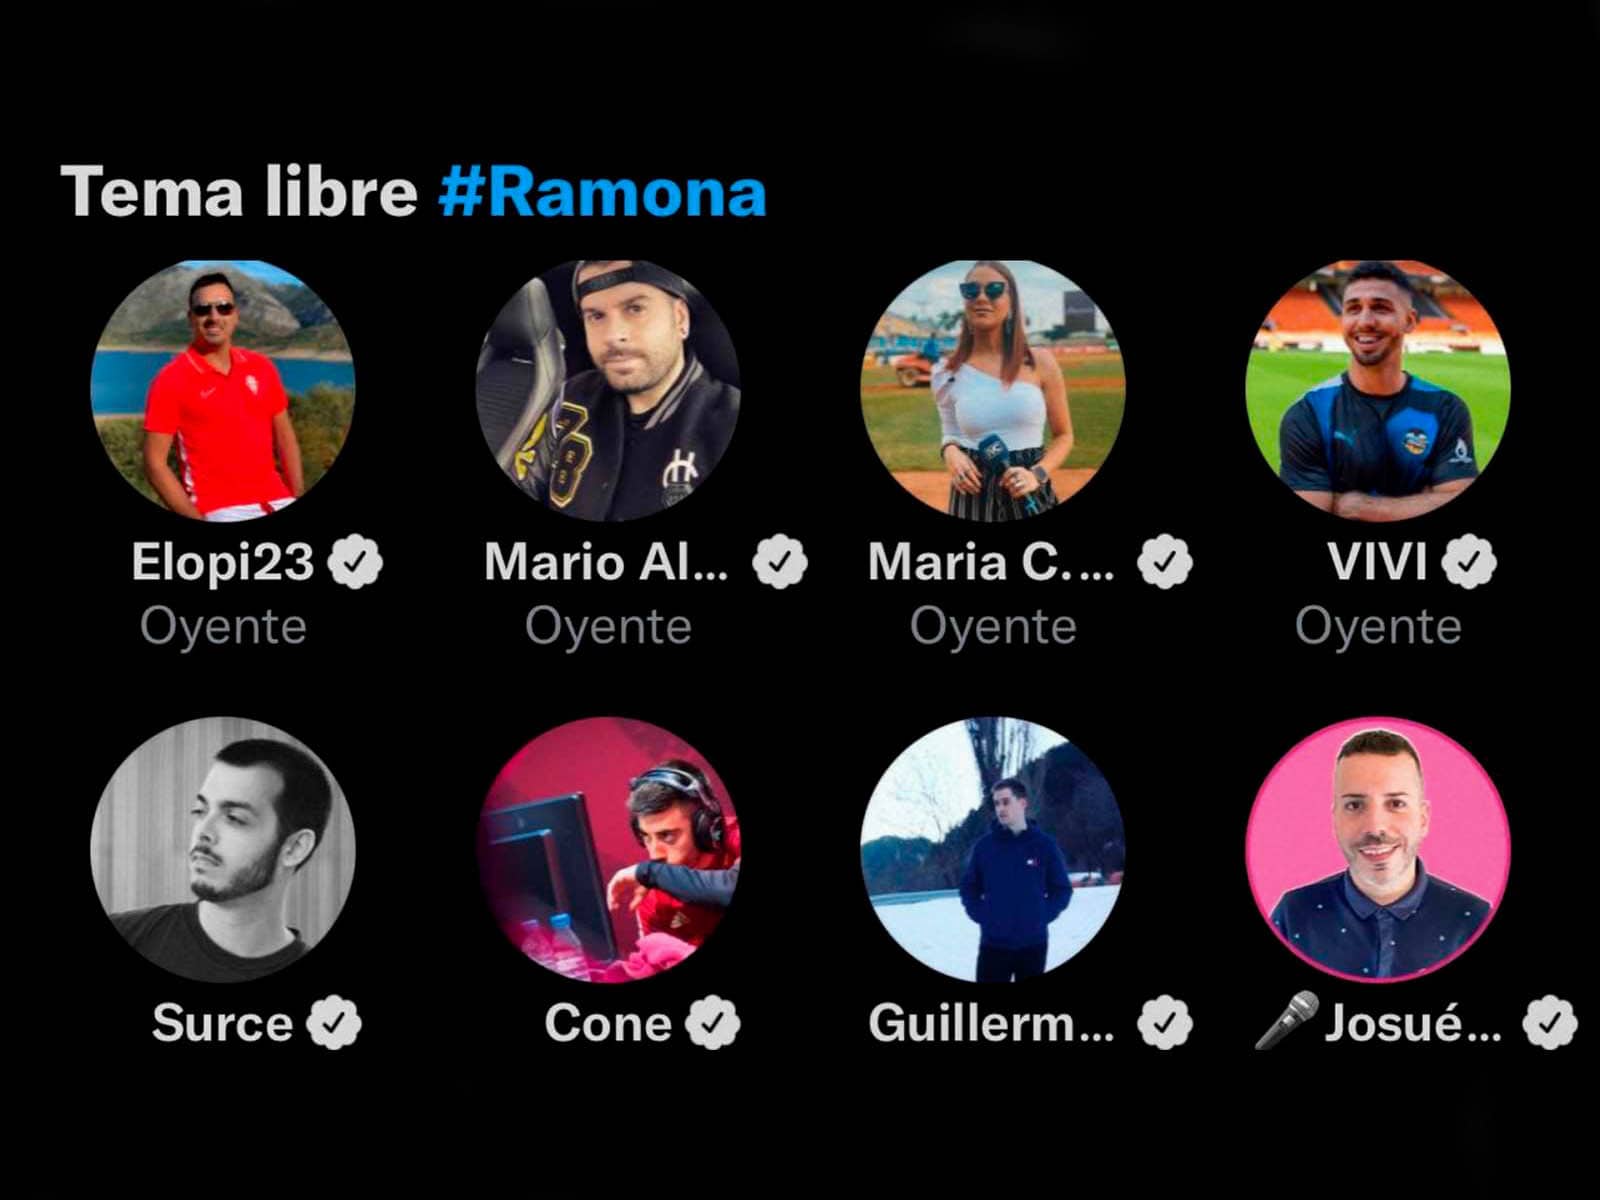 Who is Ramona “trending topic” on Twitter?